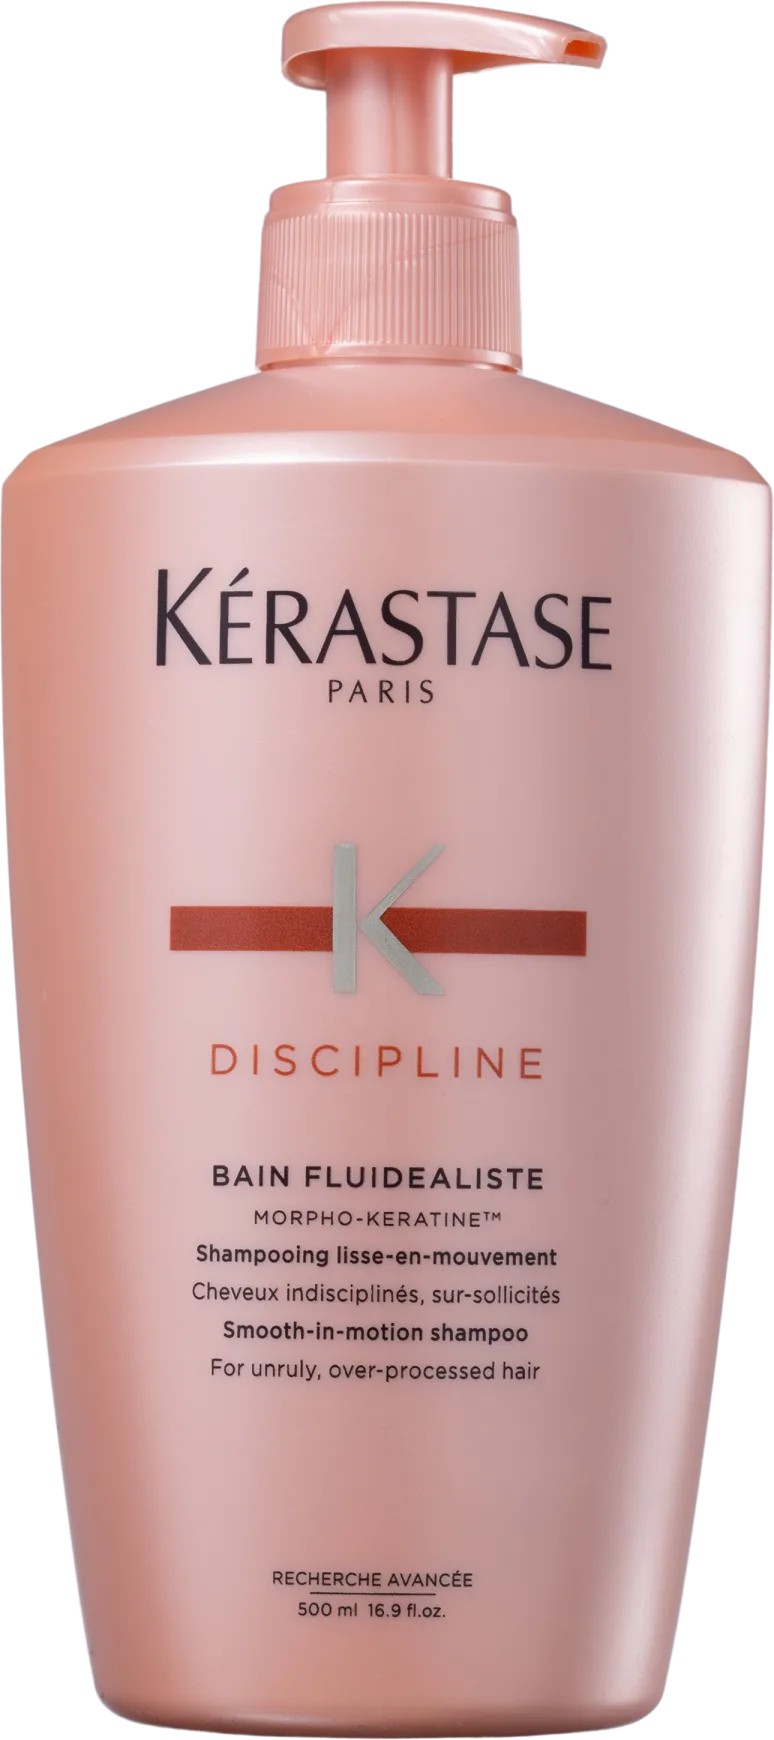 Shampoo Kérastase Discipline Bain Fluidealiste - 500ml - Marlene Beauty -  Ampla gama de perfumes importados e produtos de beleza